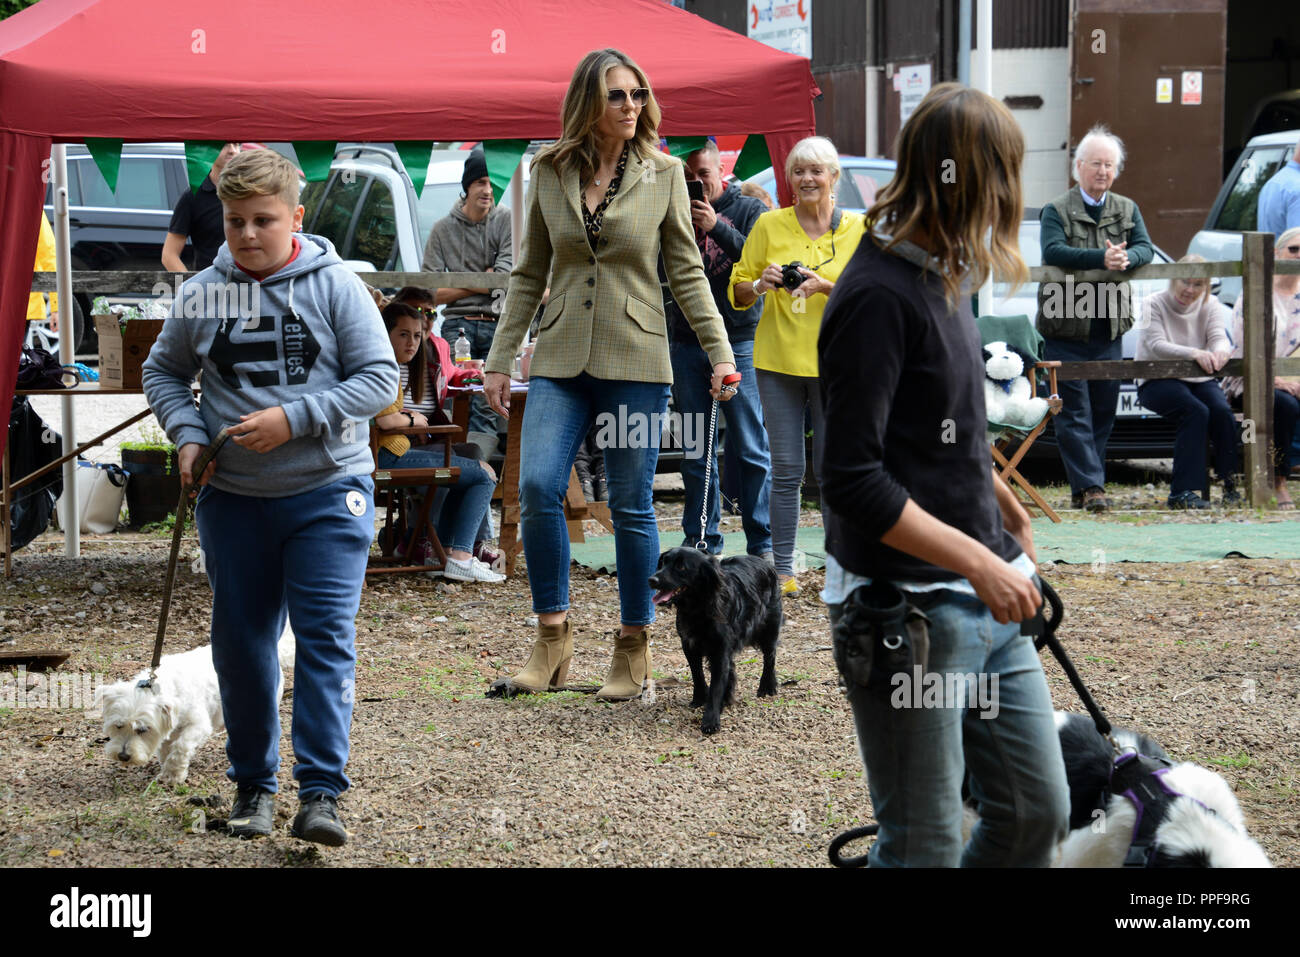 Bromsberrow Heath Fun Dog Show. Il 15 settembre 2018. Herefordshire. Elizabeth Hurley & il suo spaniel Mia prendendo parte ad un villaggio dog show. Foto Stock